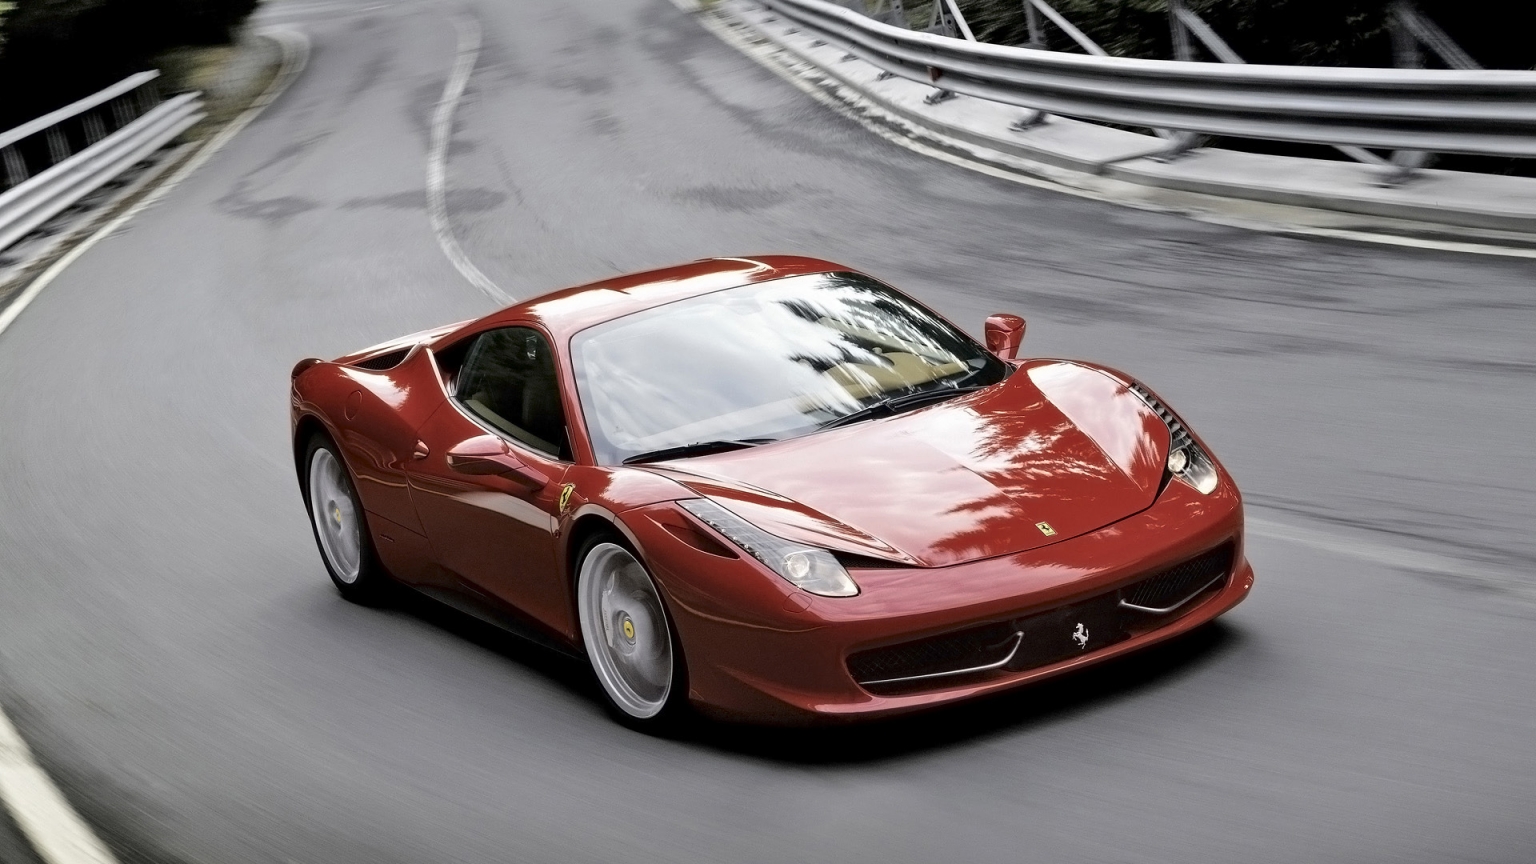 2011 Ferrari 458 Italia Red Speed for 1536 x 864 HDTV resolution